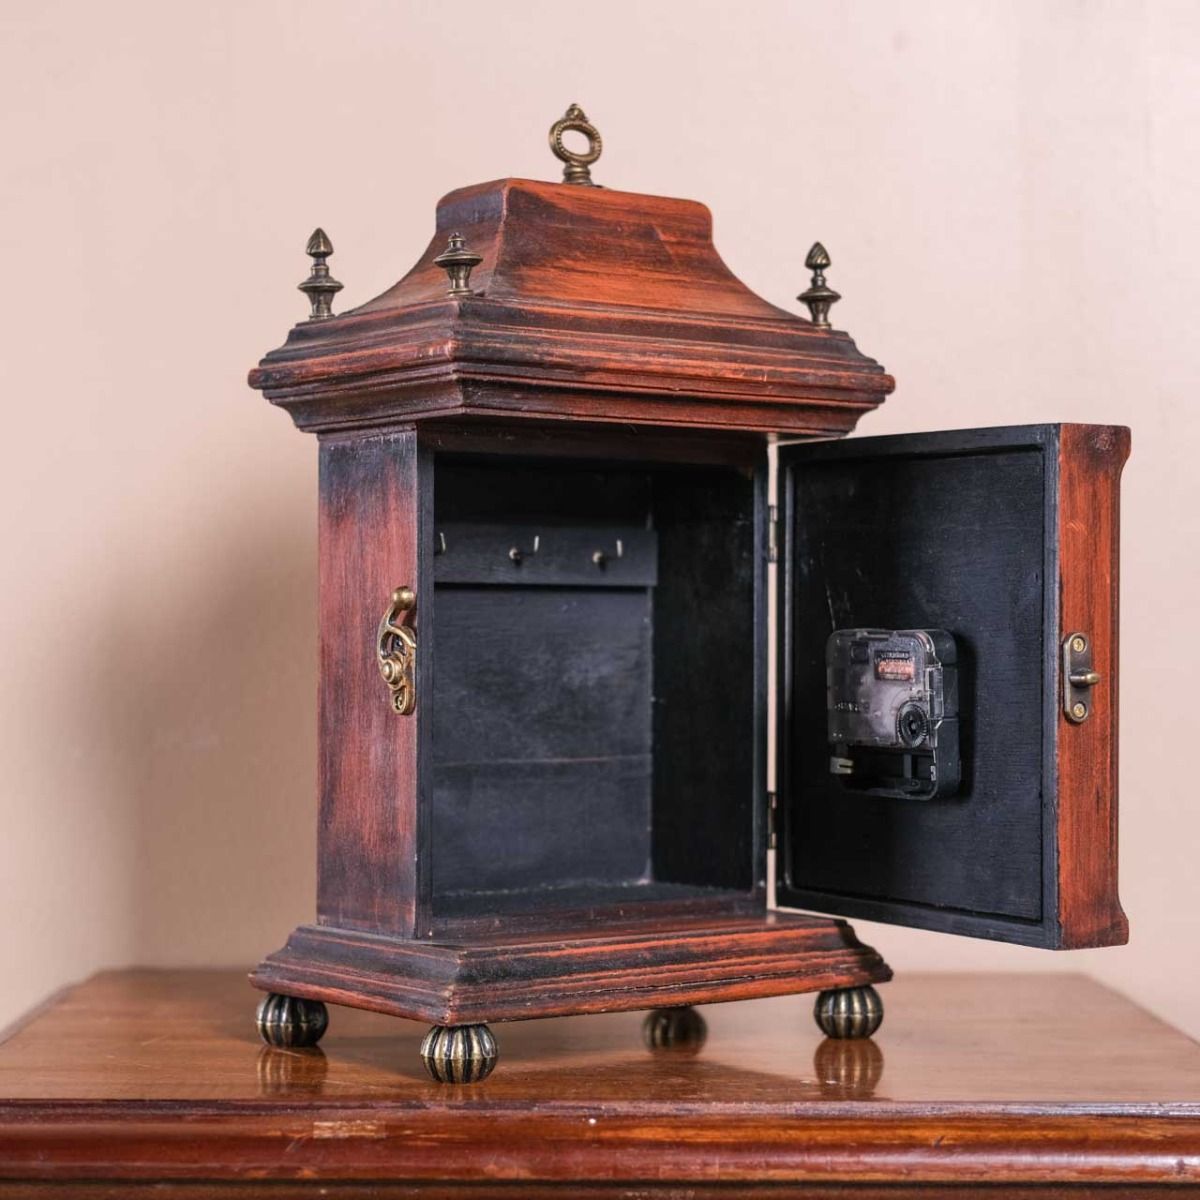 Retro Wooden Clock Keychain, Antique Wooden Clock Keychain.